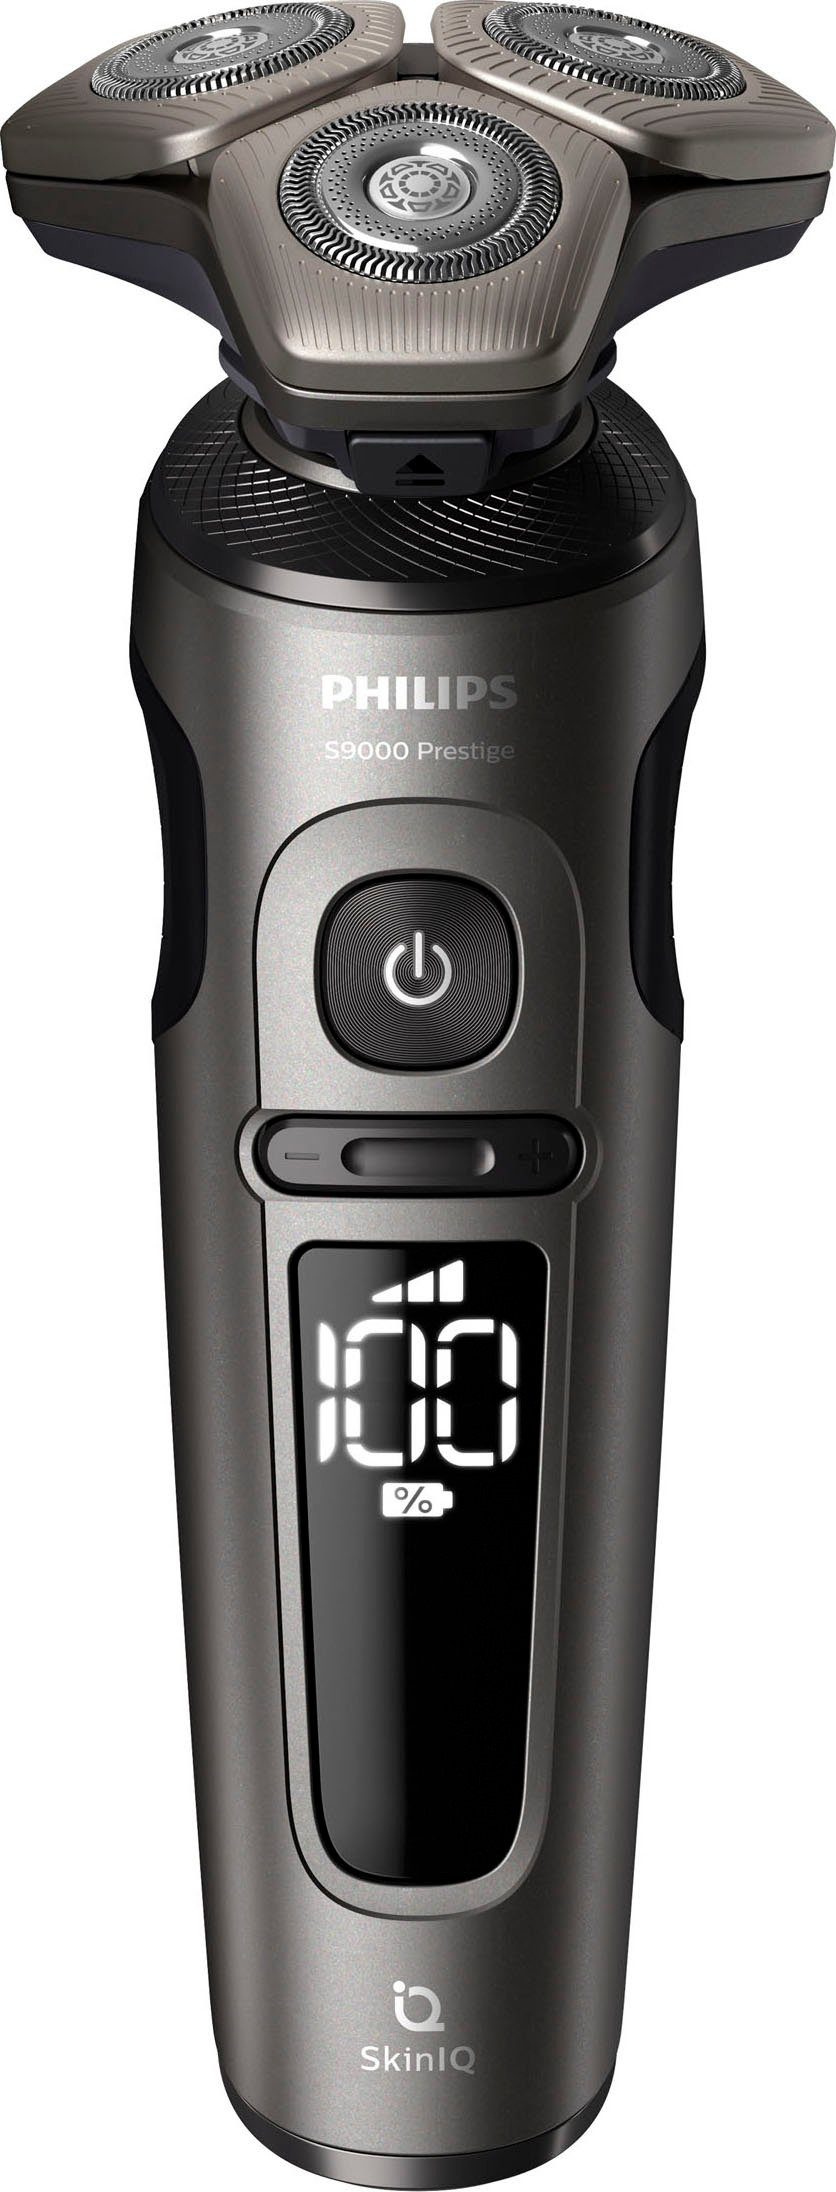 Philips Elektrorasierer Series 9000 Prestige SkinIQ Aufsätze: 2, SP9872/15, Technologie Etui, mit